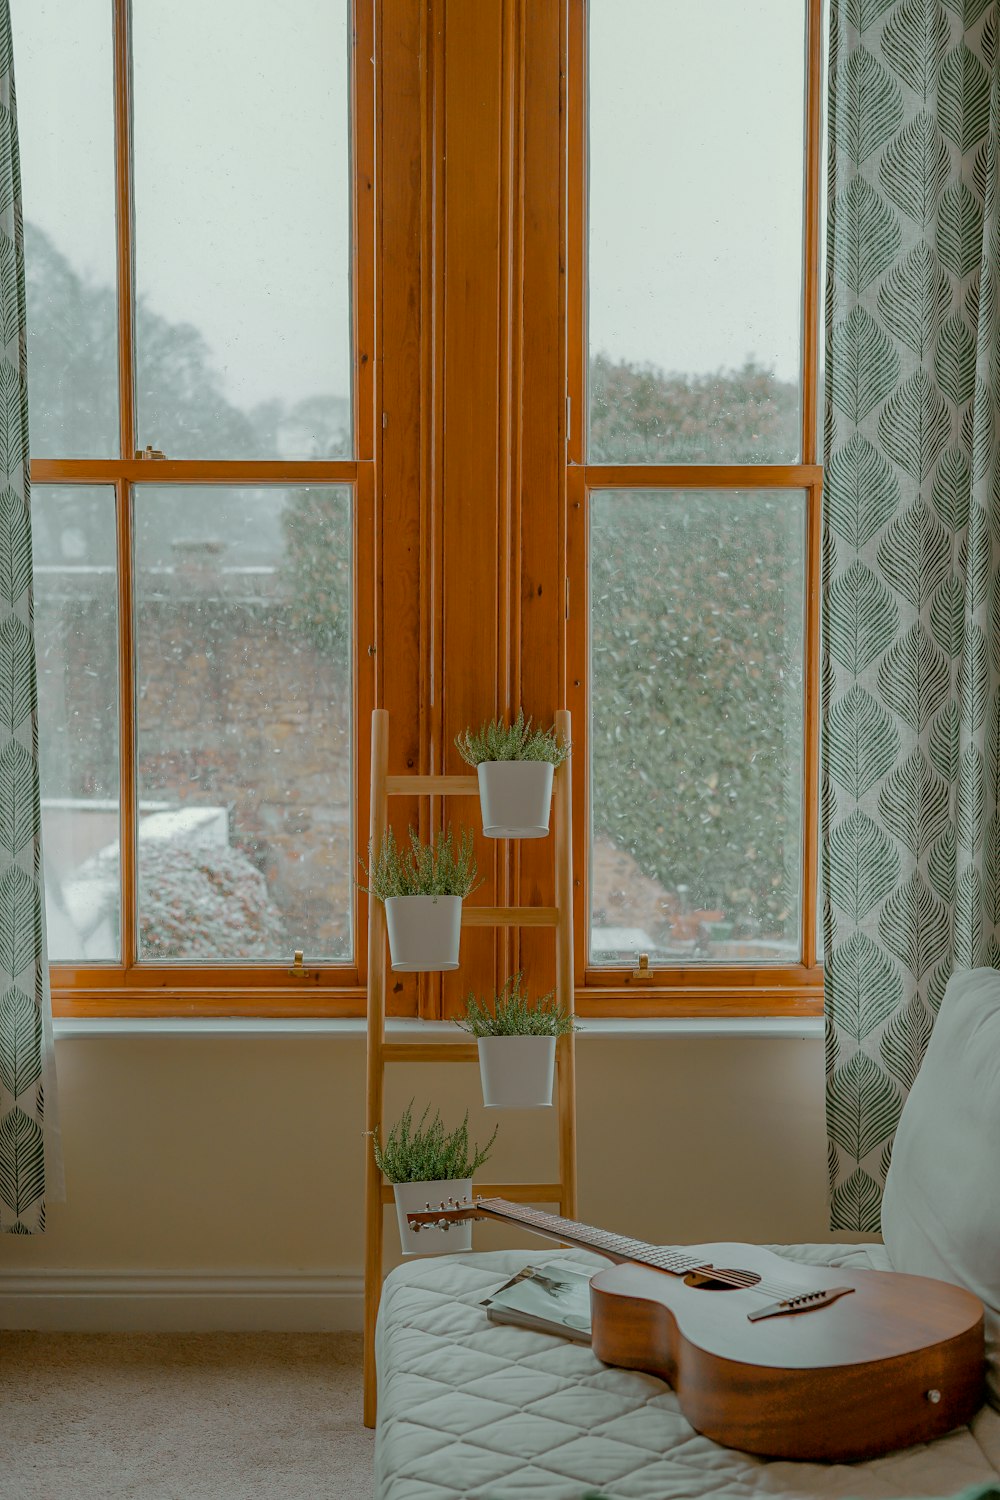 quatre plantes à feuilles vertes avec pot sur support près de la fenêtre